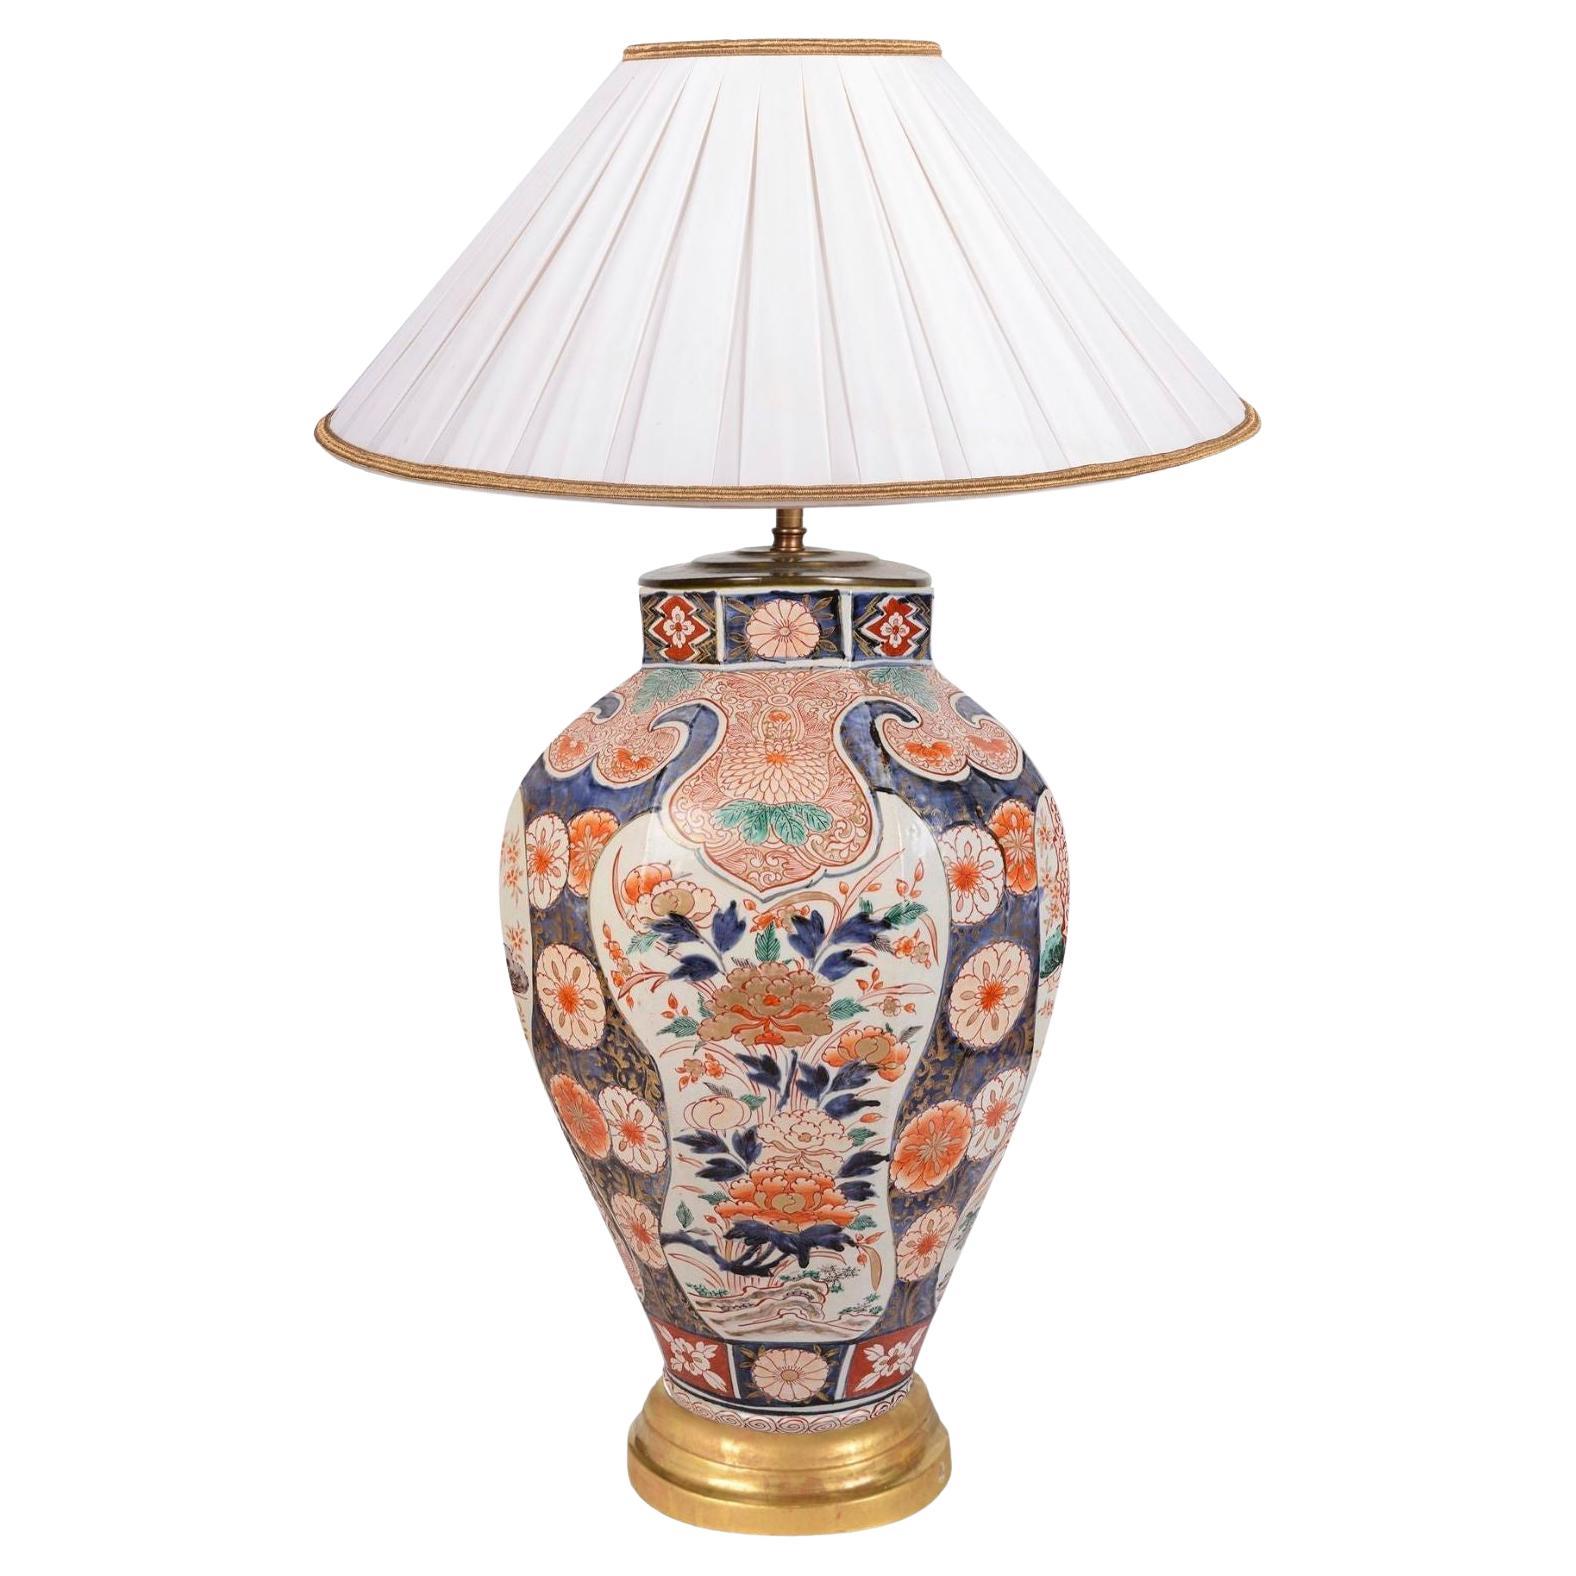 Japanische Arita-Porzellanvase/Lampe aus dem 18. Jahrhundert